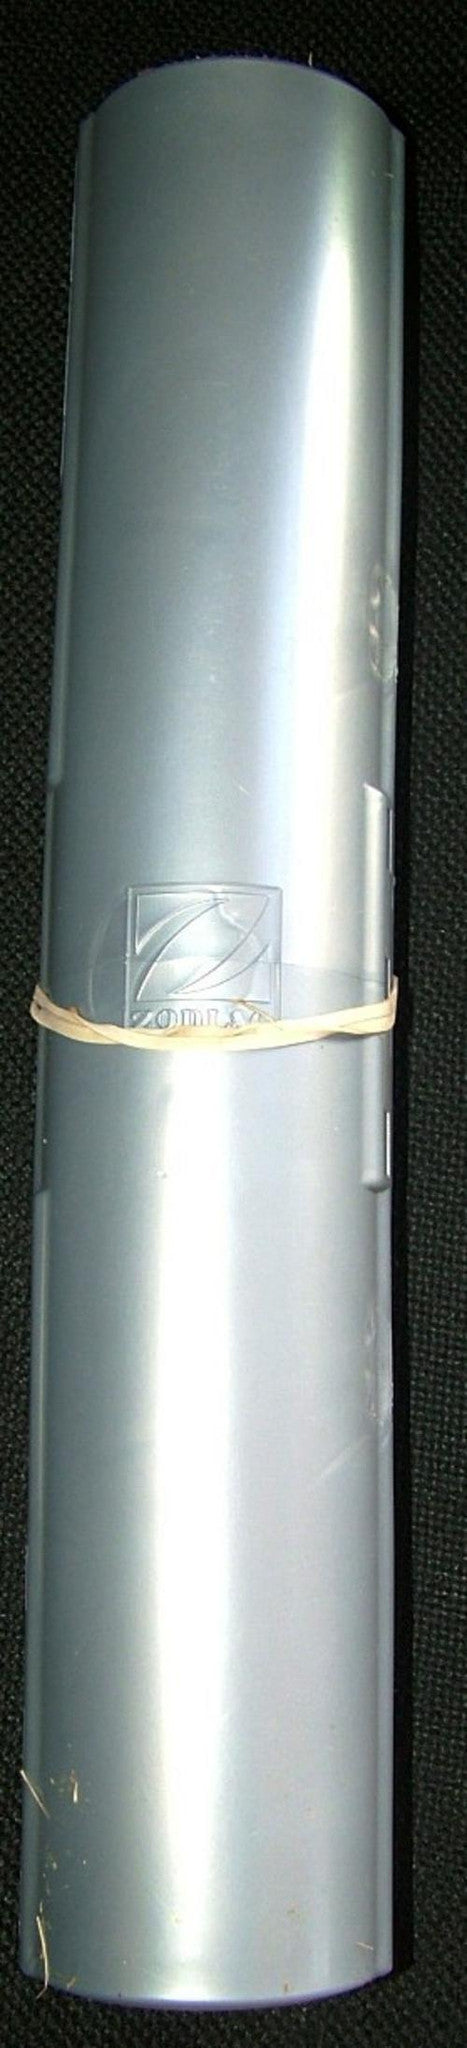 ZODIAC Baracuda X7 Quattro pipe protector